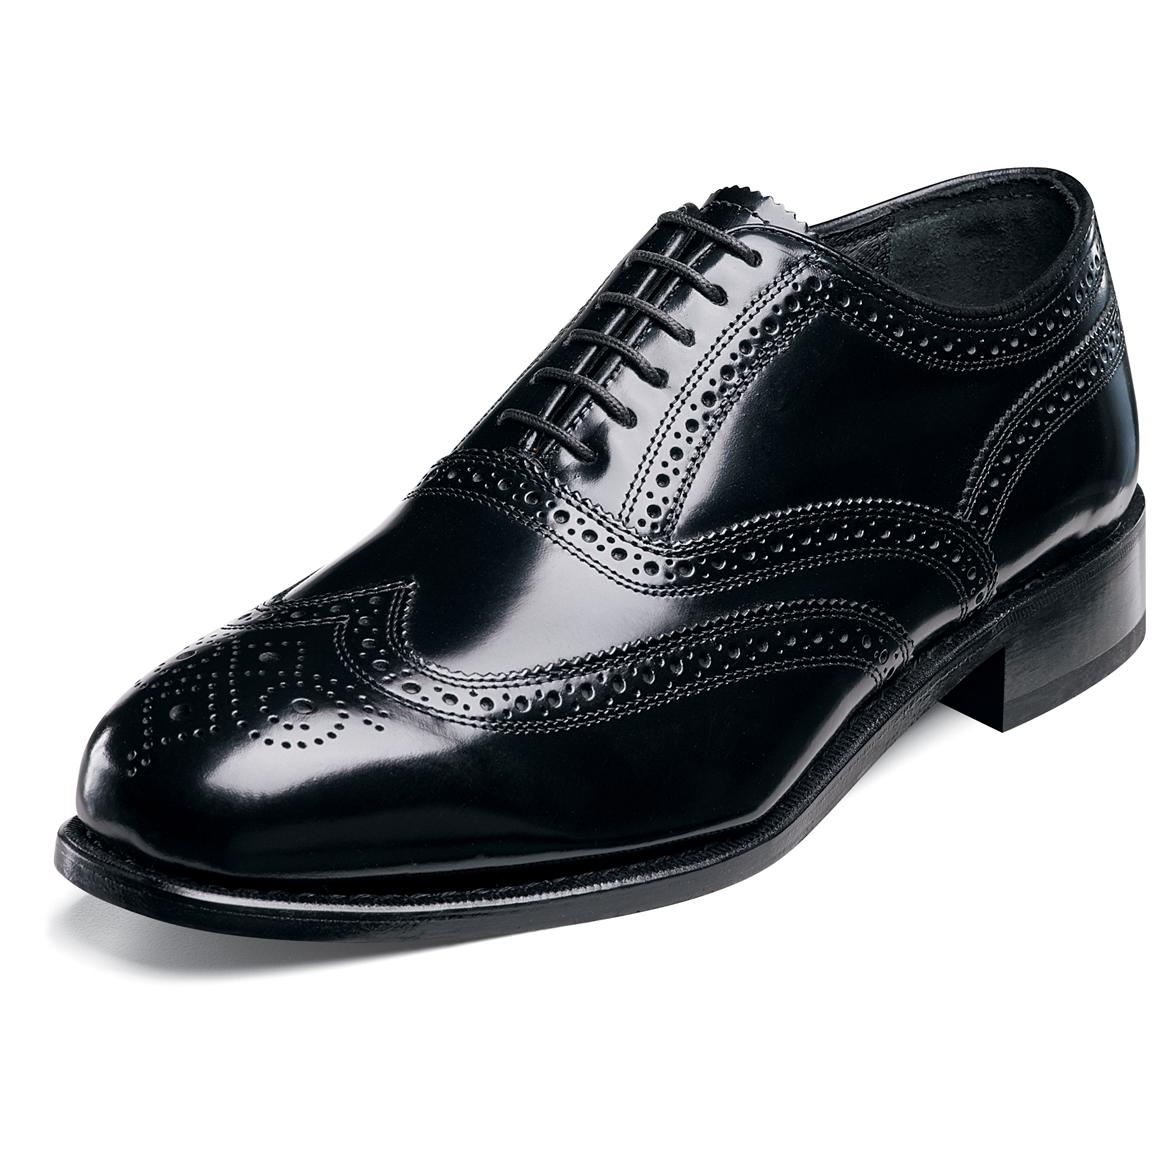 Men's Florsheim® Wing Tip Lexington Shoes - 185724, Dress Shoes at ...